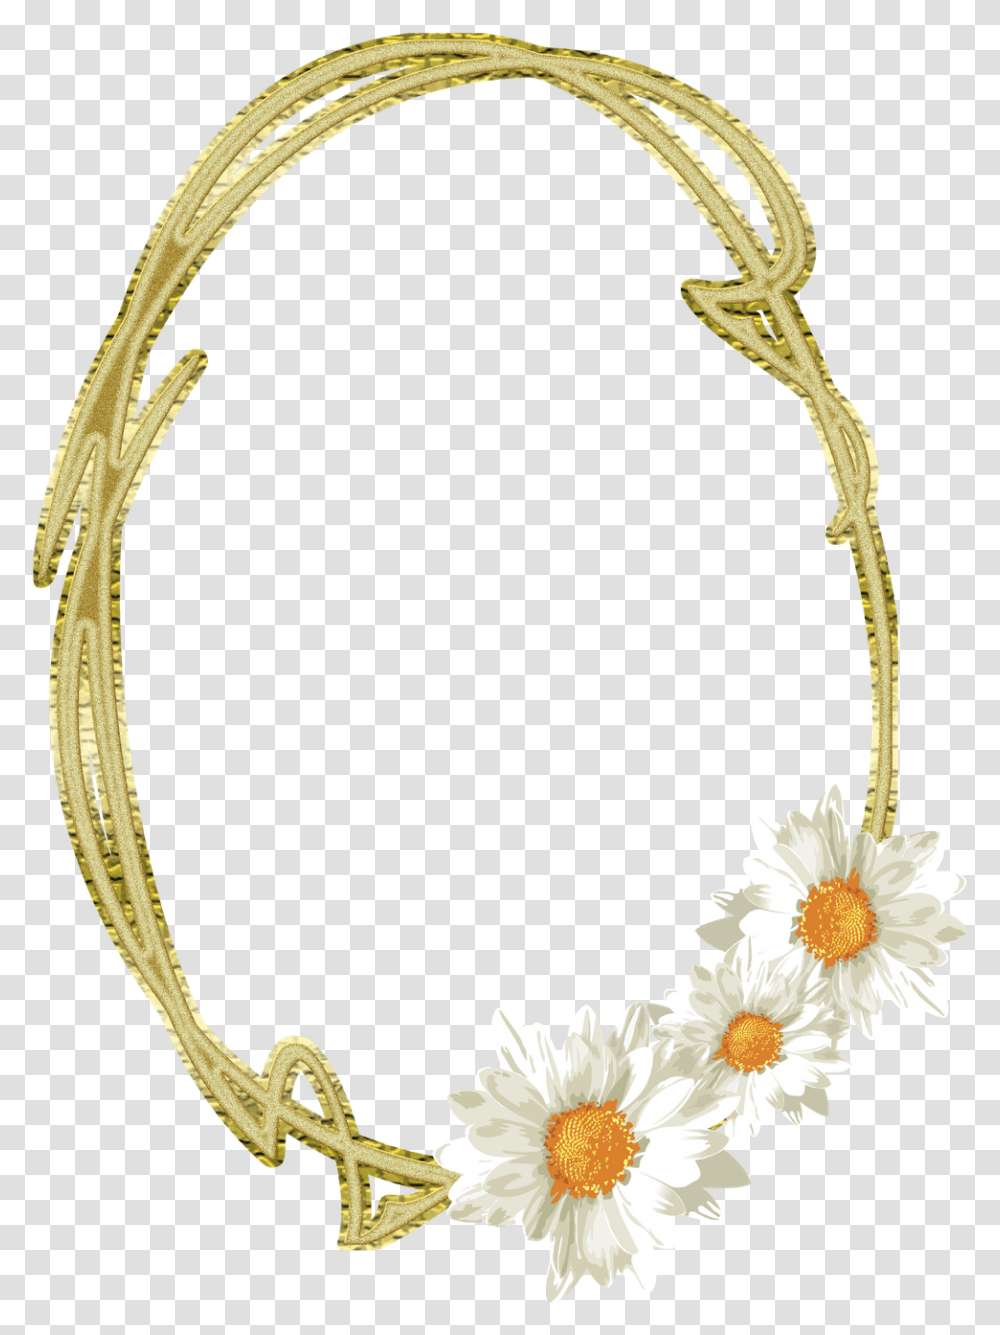 Moldura Oval, Plant, Flower, Blossom, Gold Transparent Png